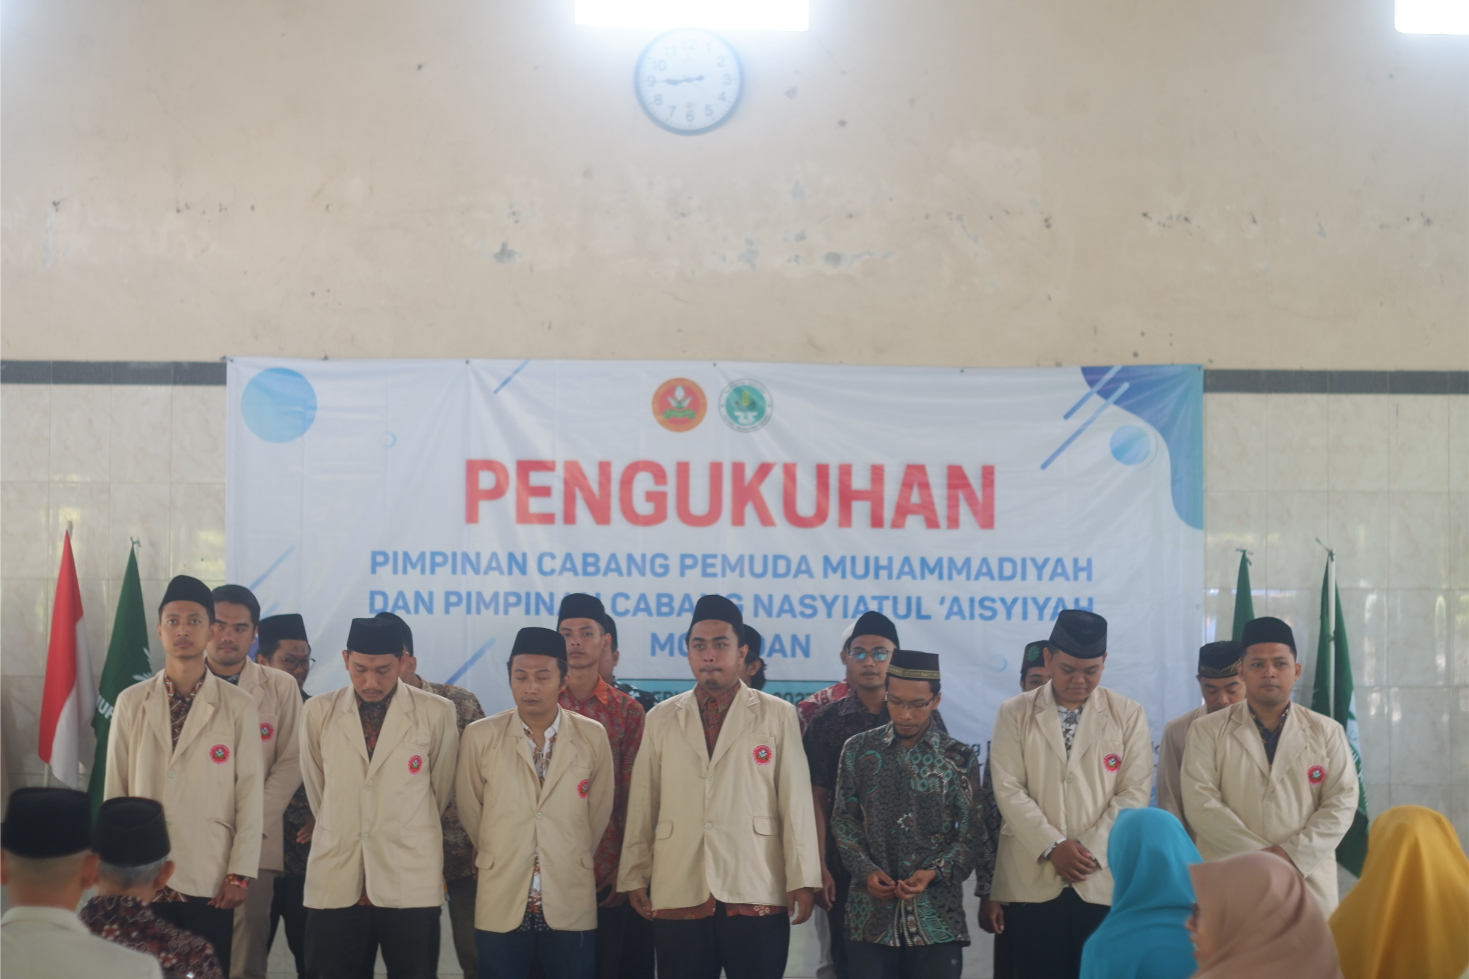 Pimpinan Cabang Pemuda Muhammadiyah Moyudan